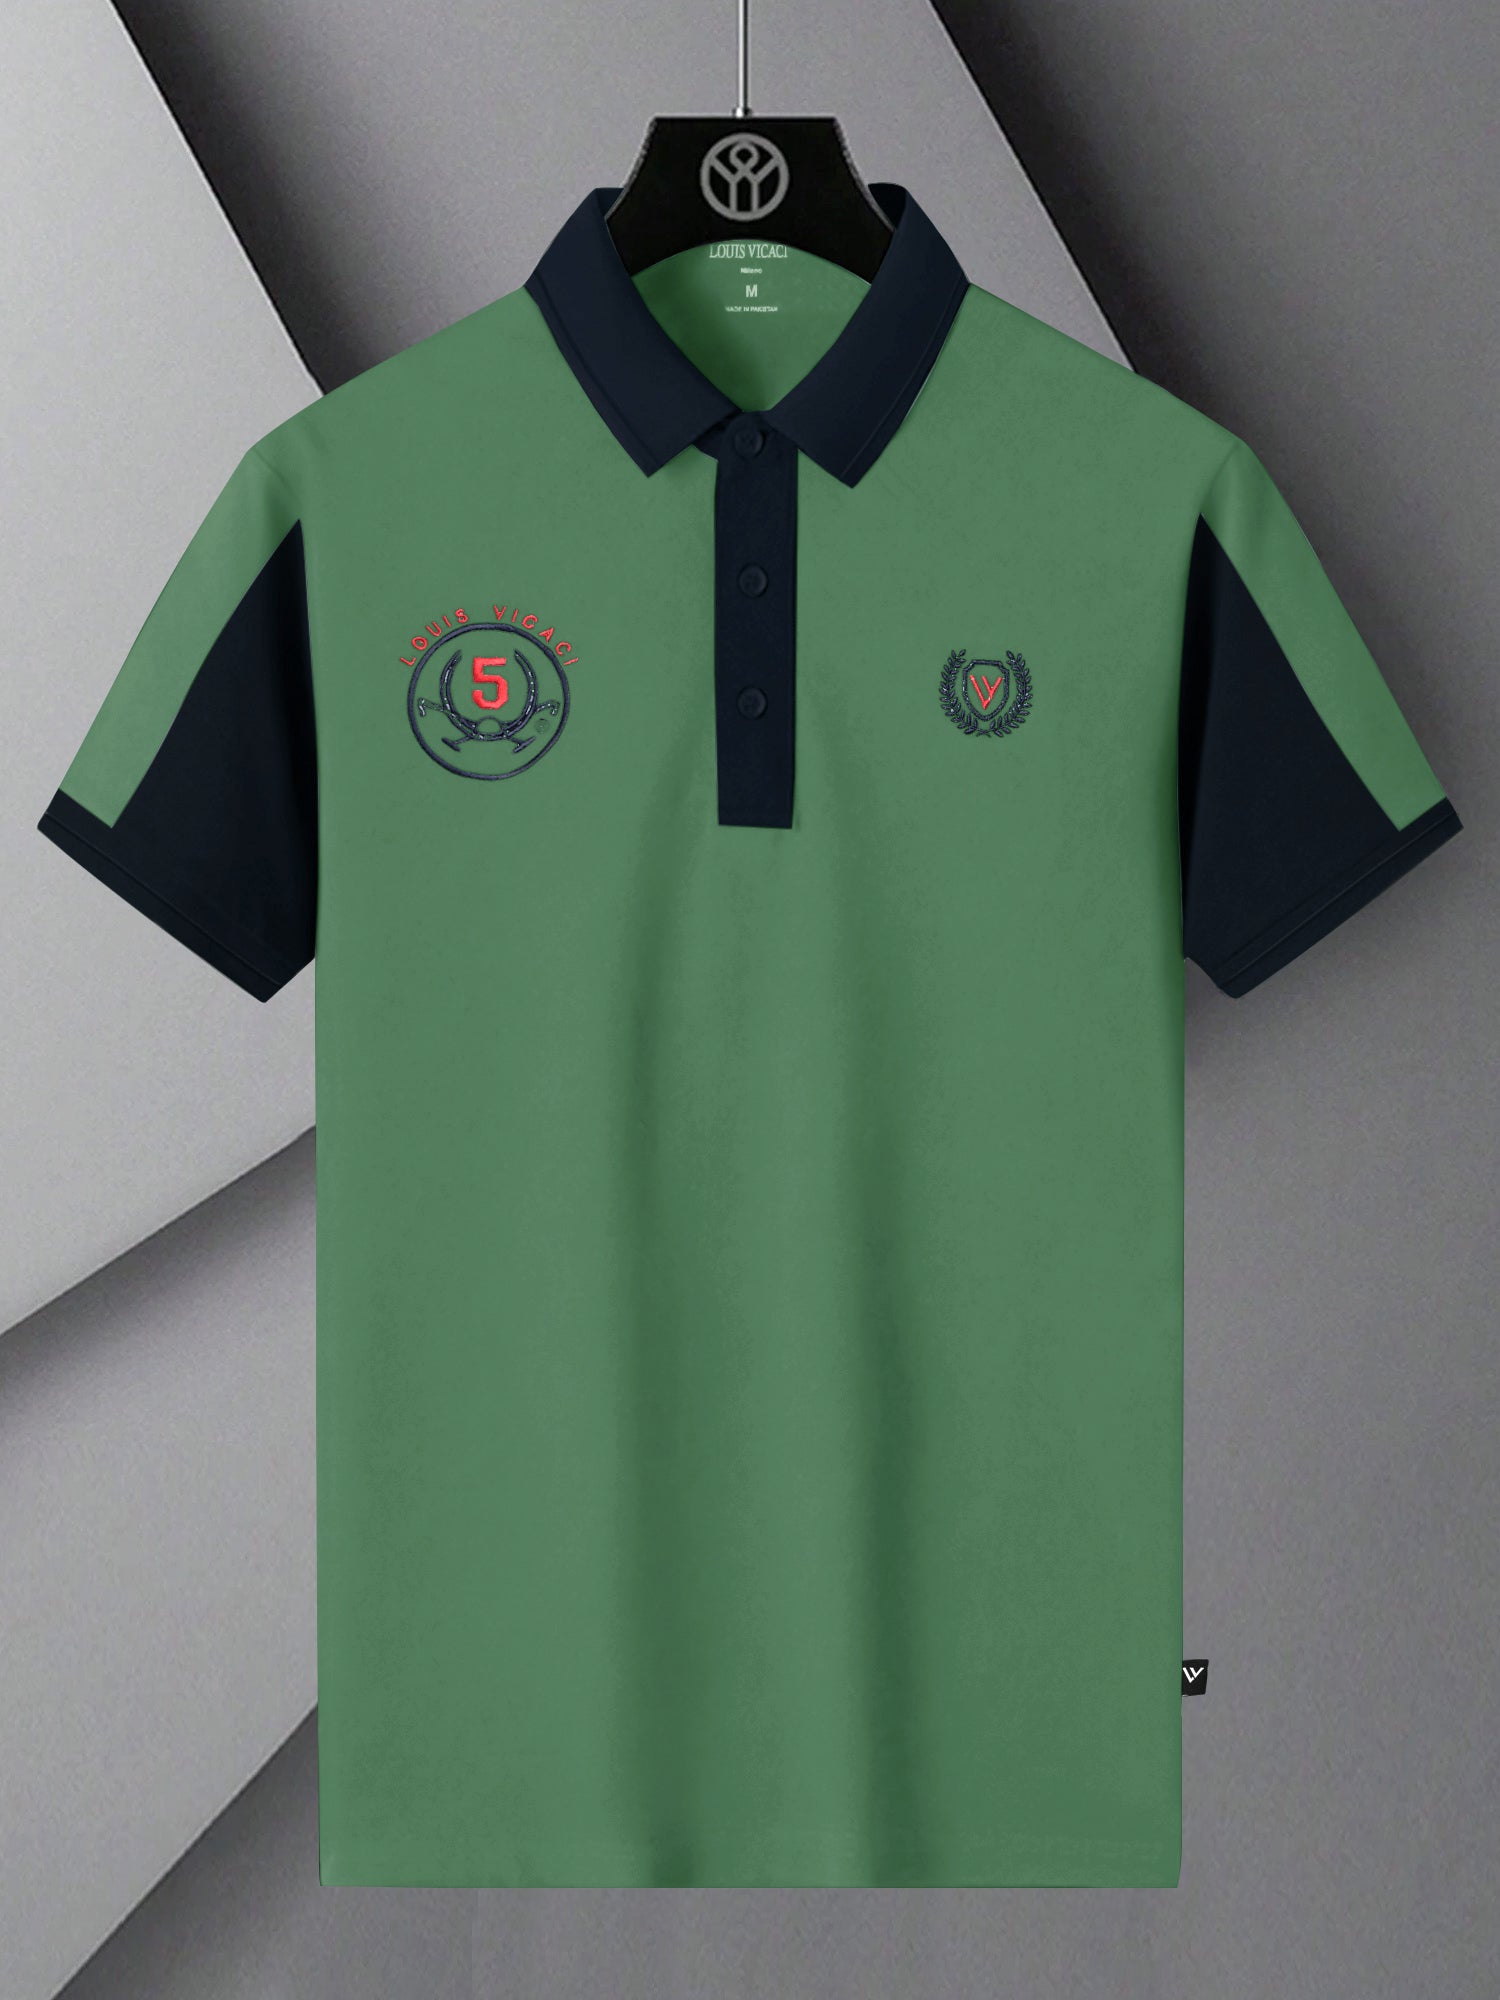 LV Summer Polo Shirt For Men-Dark Sea Green & Dark Navy-SP1569